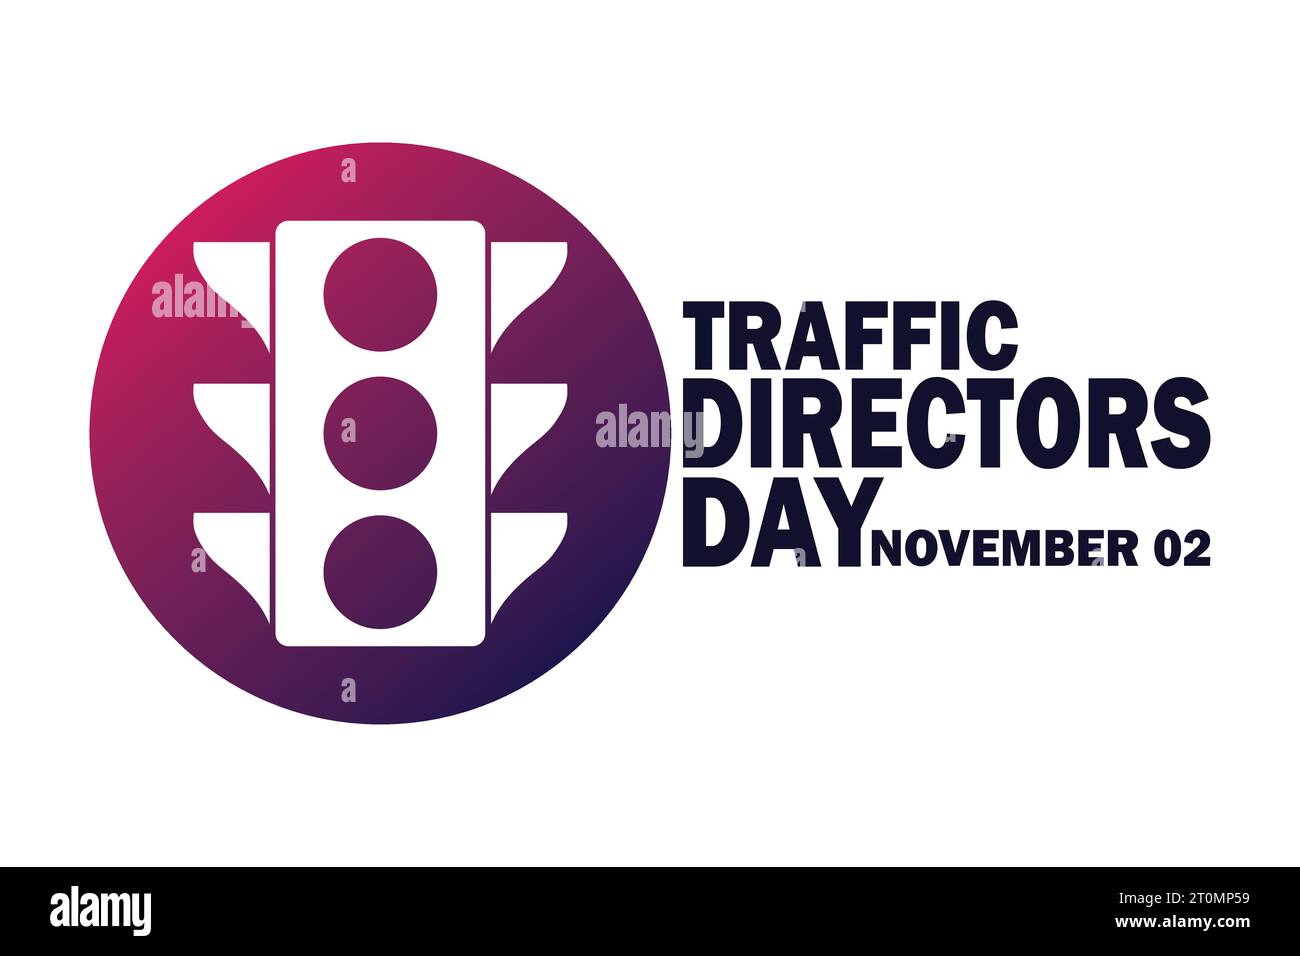 Traffic Directors Day. November Urlaubskonzept. Vorlage für Hintergrund, Banner, Karte, Poster mit Textbeschriftung. Vektorabbildung. Stock Vektor